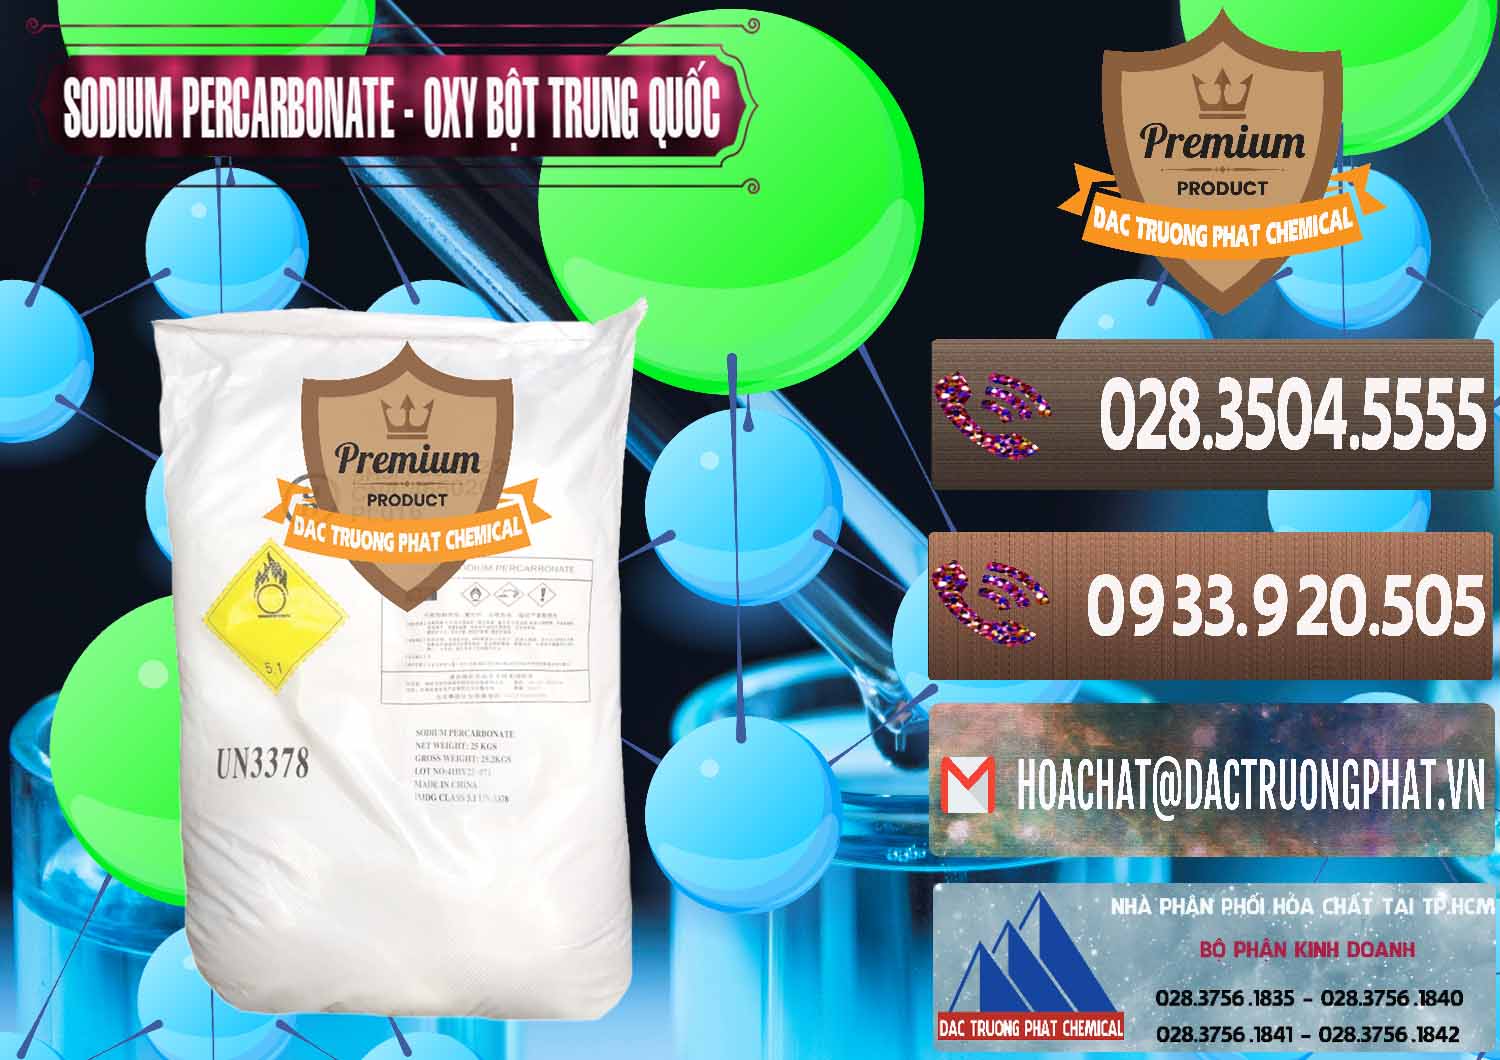 Bán ( cung ứng ) Sodium Percarbonate Dạng Bột Trung Quốc China - 0390 - Cty chuyên phân phối & kinh doanh hóa chất tại TP.HCM - hoachatviet.net